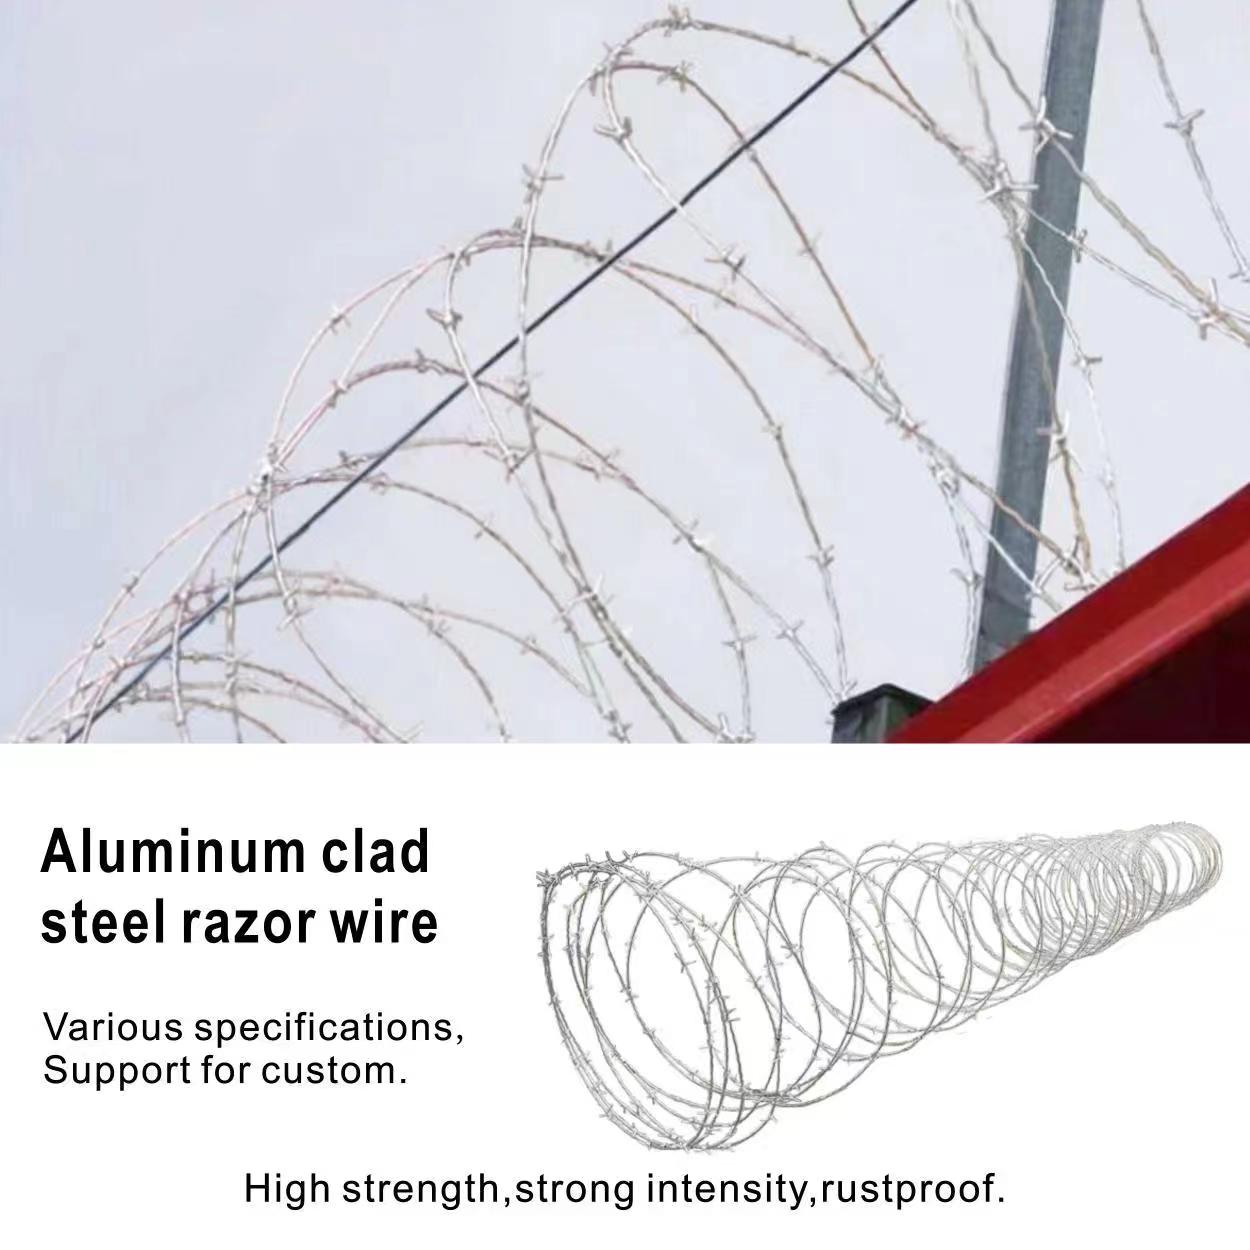 Aluminum clad
steel razor wire